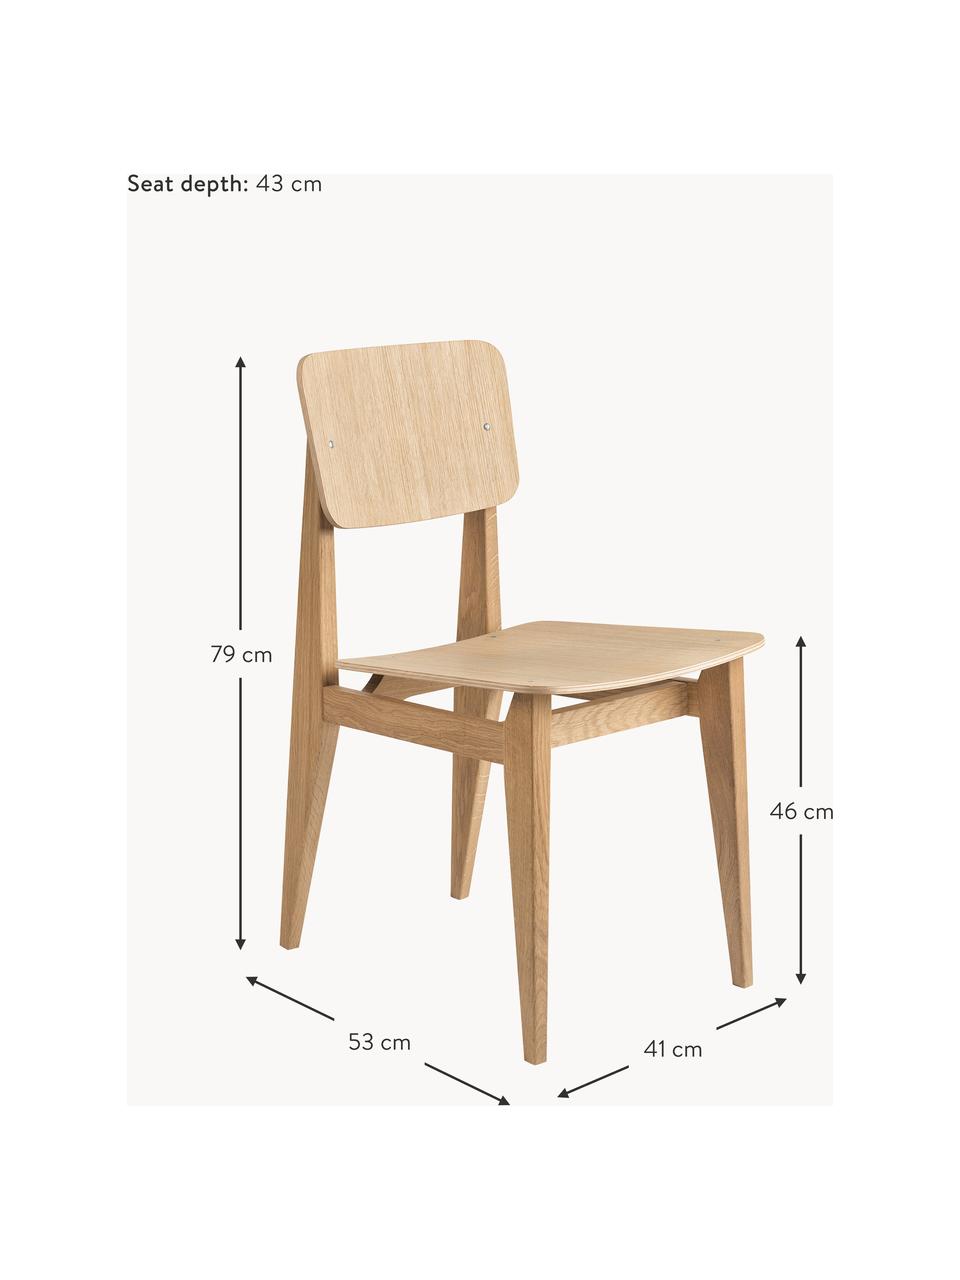 Krzesło z drewna dębowego C-Chair, Drewno dębowe, Drewno dębowe, S 41 x G 53 cm